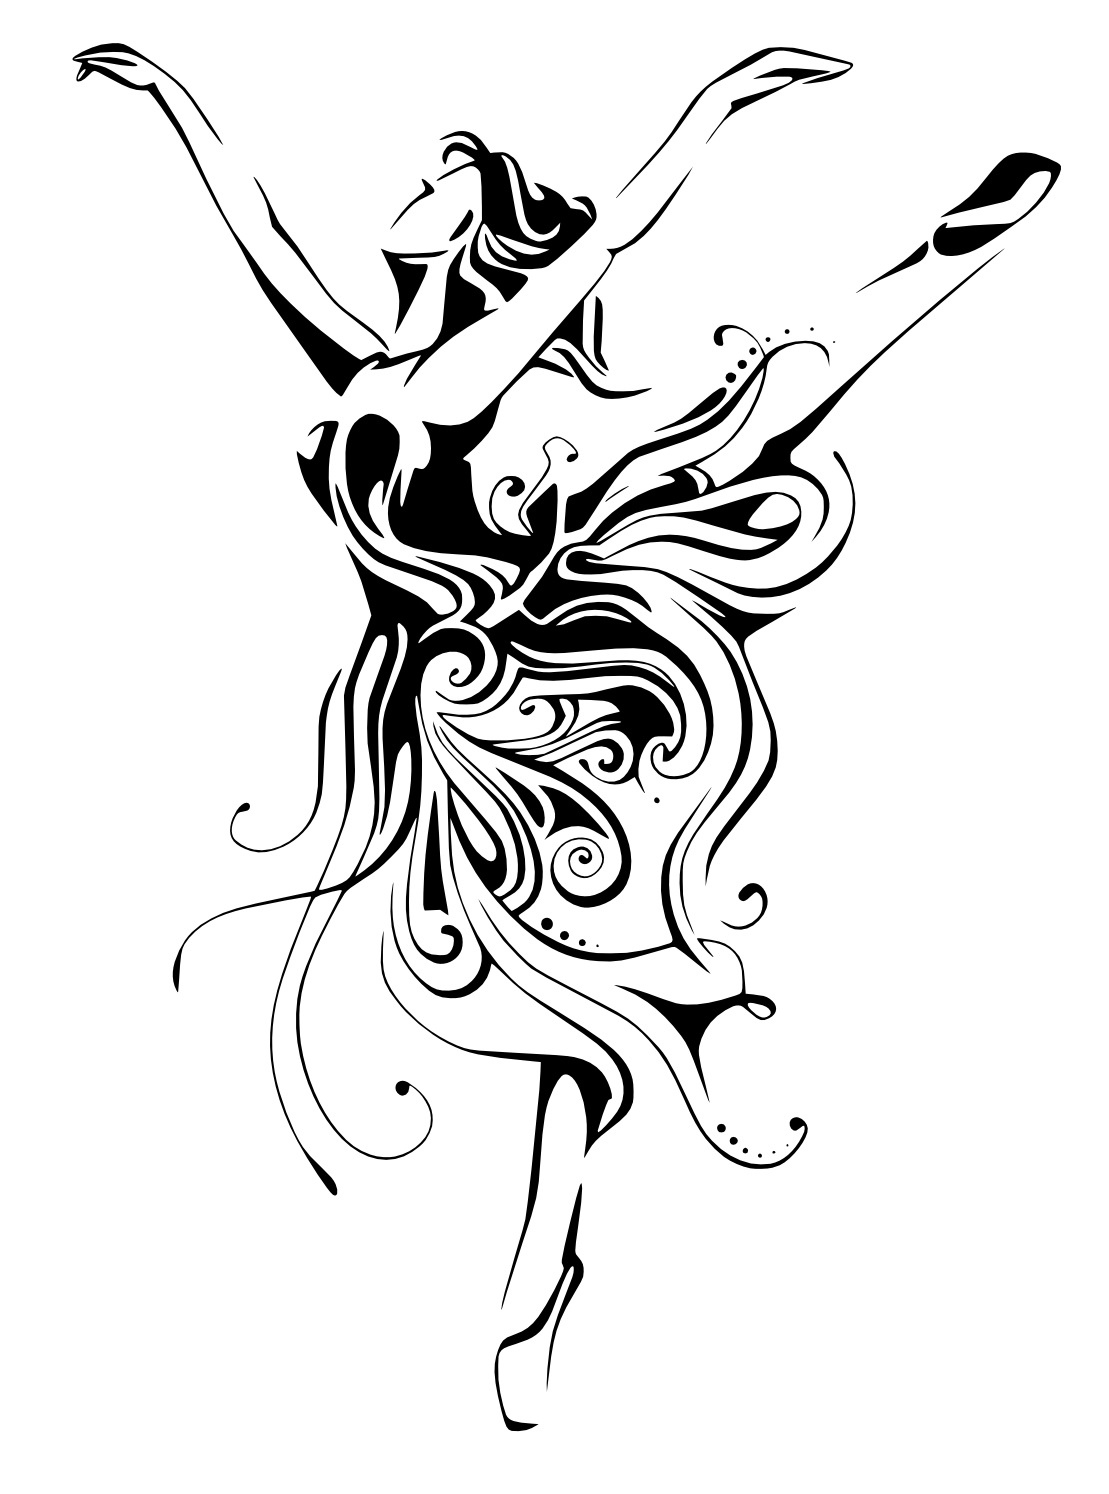 Ballerina Female Dancer Free CDR Vectors Art